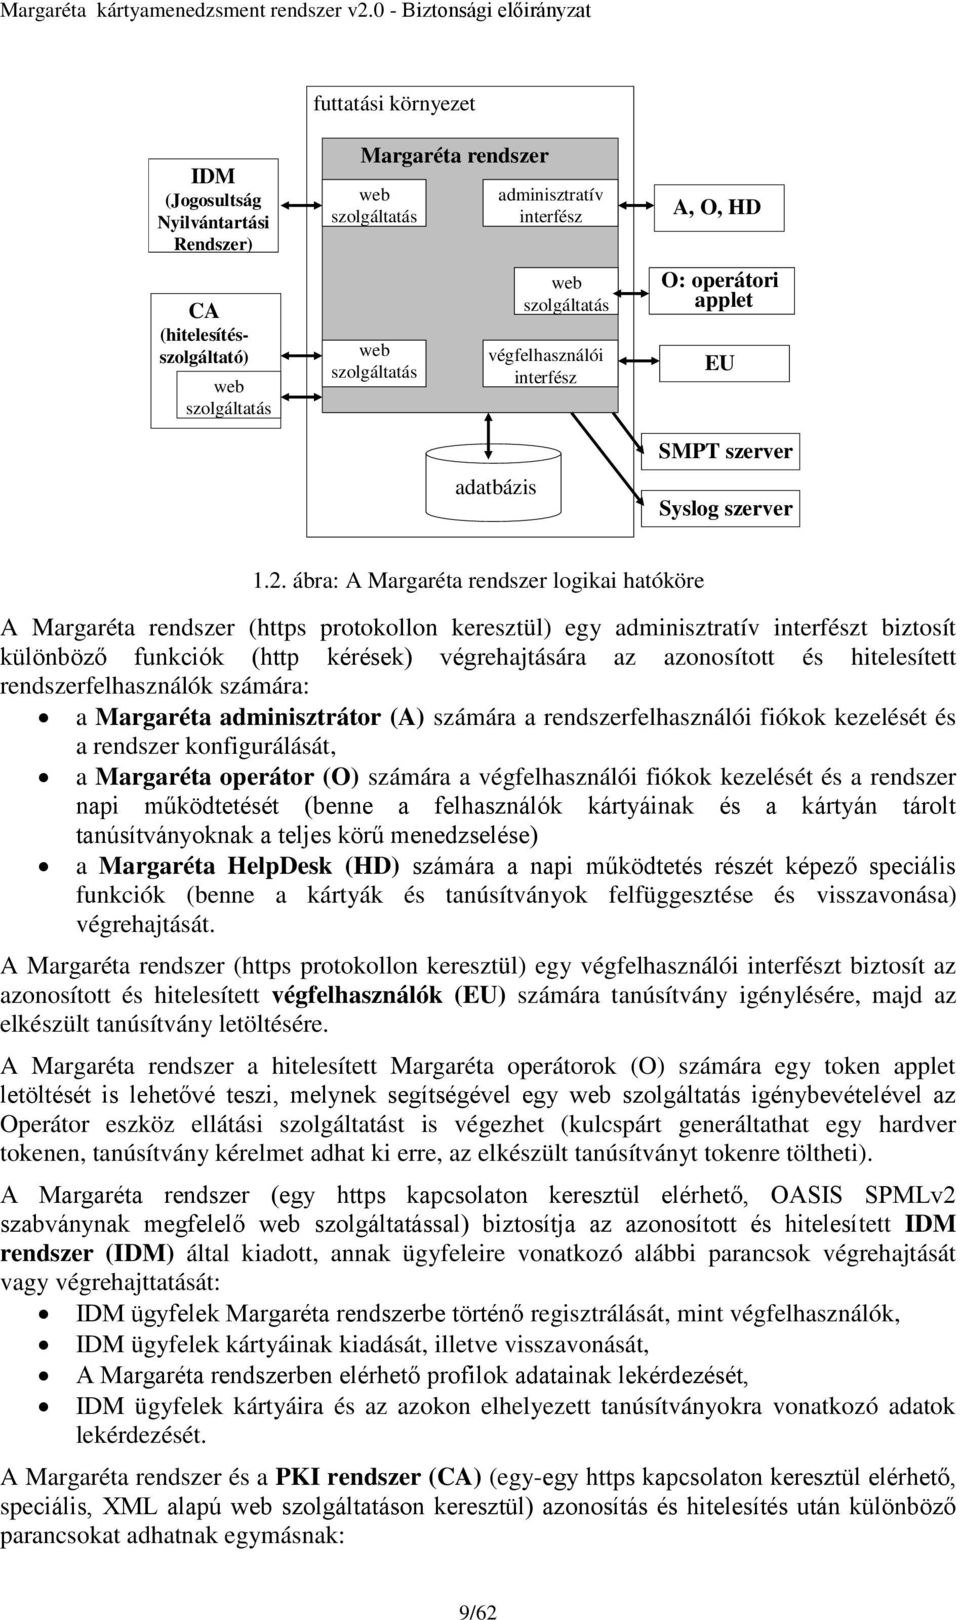 ábra: A Margaréta rendszer logikai hatóköre A Margaréta rendszer (https protokollon keresztül) egy adminisztratív interfészt biztosít különböző funkciók (http kérések) végrehajtására az azonosított